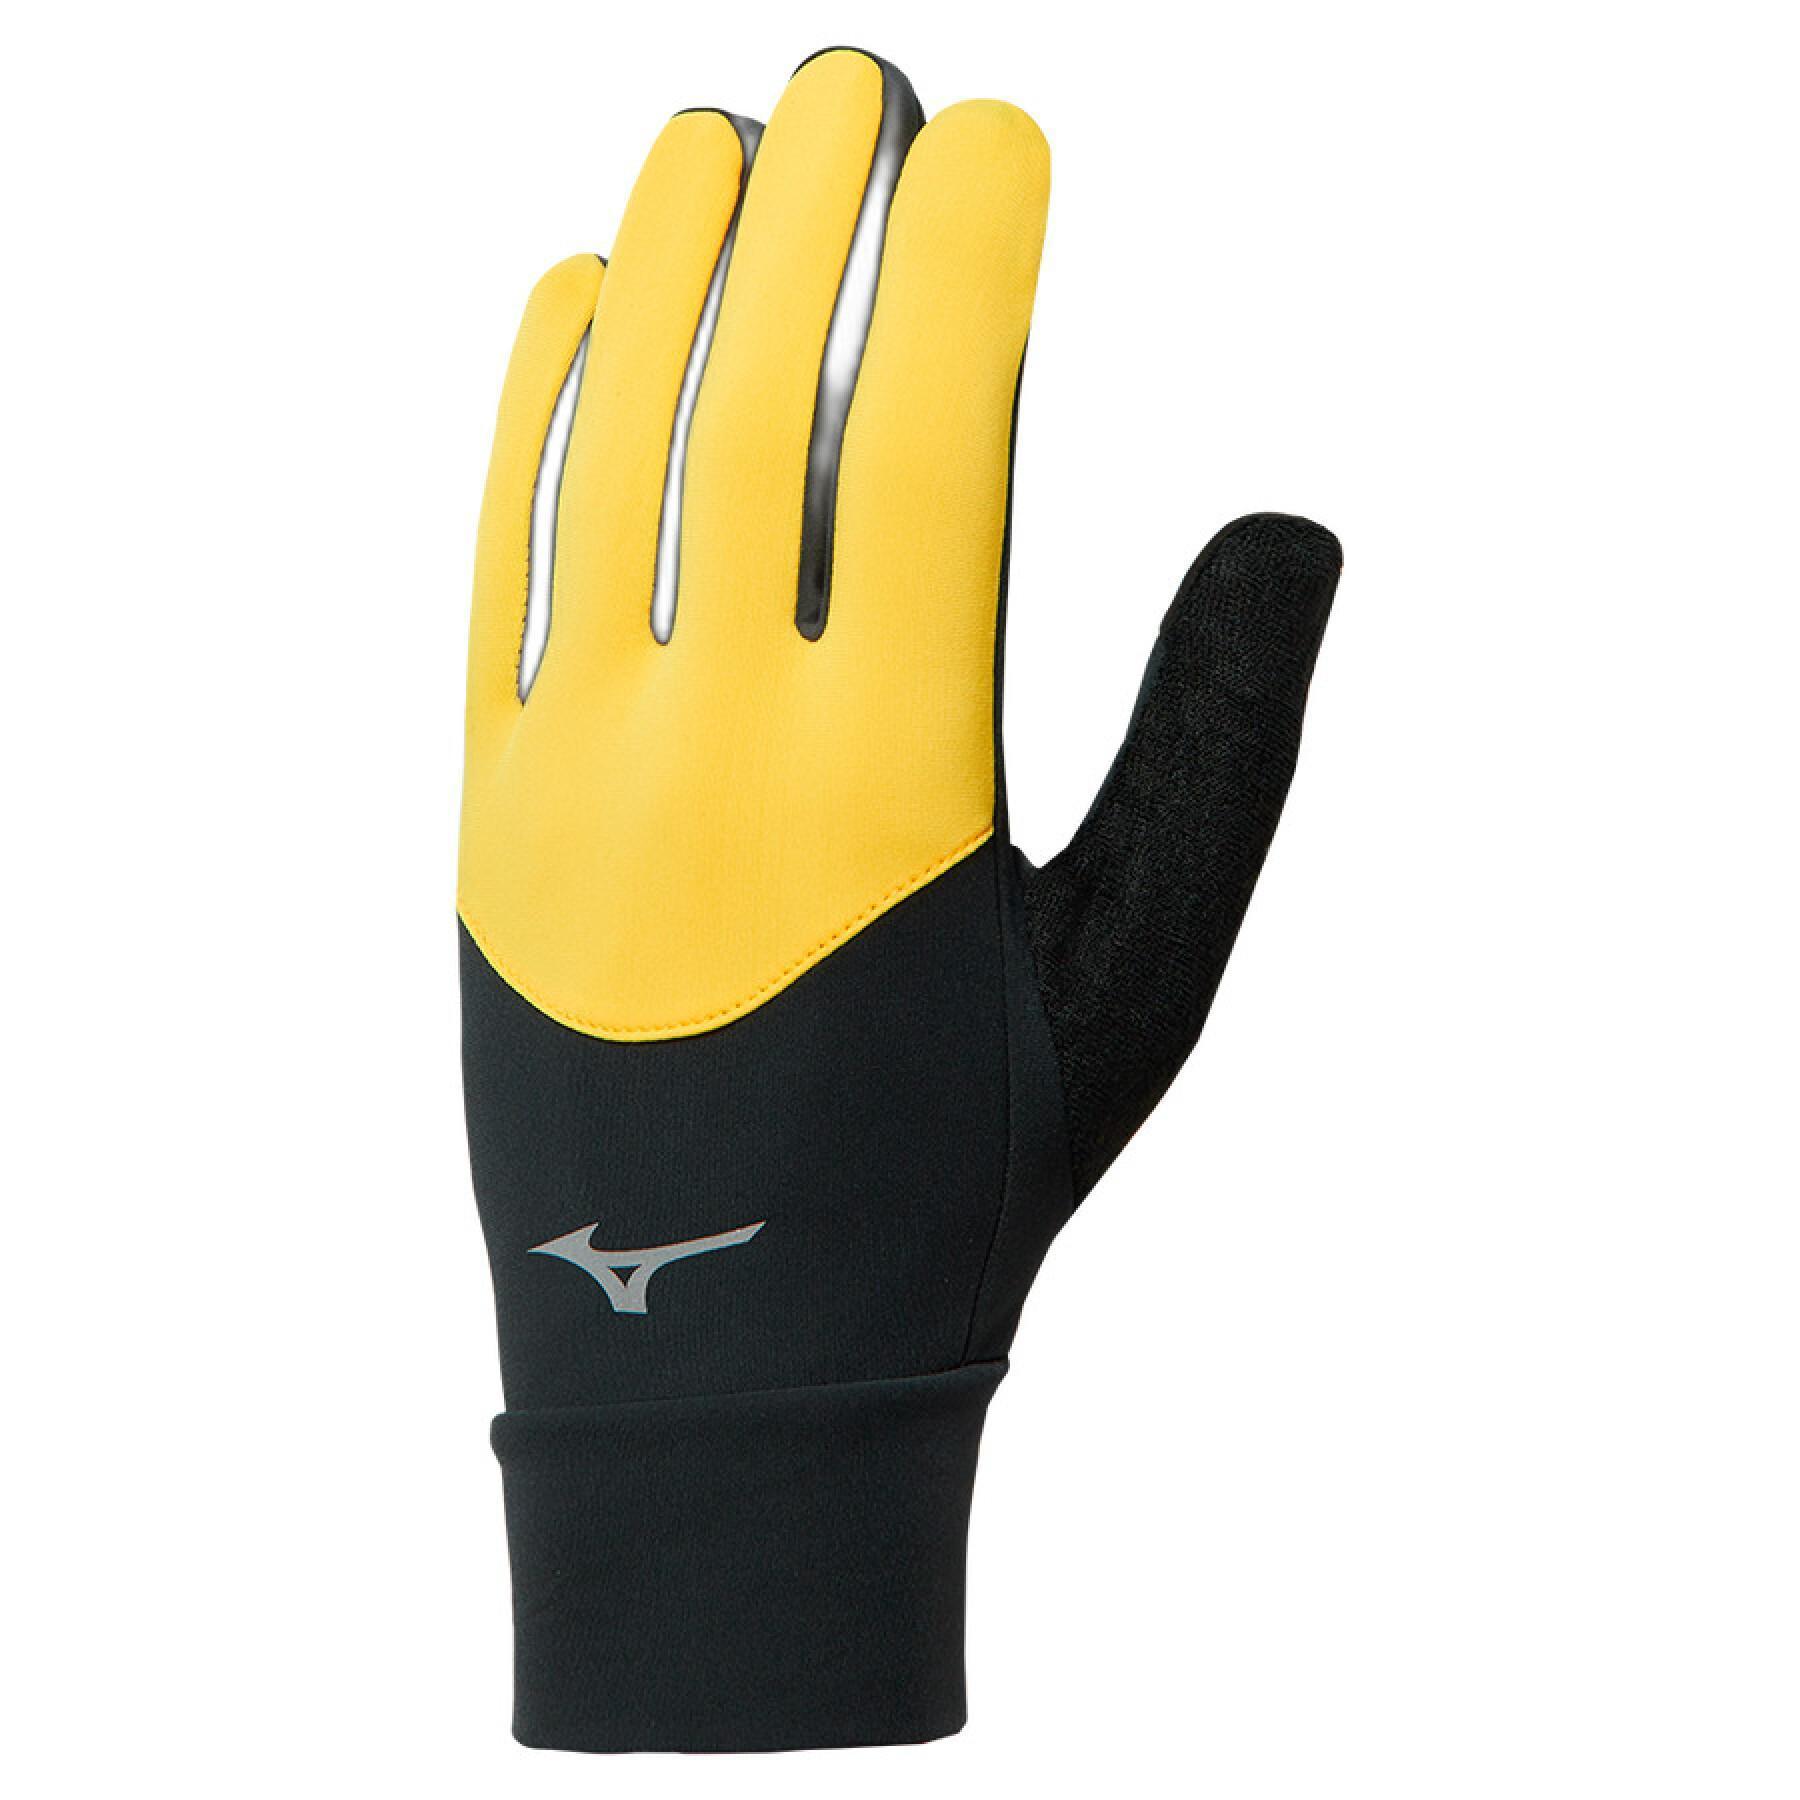 Pack of 6 pairs of gloves Mizuno Warmalite